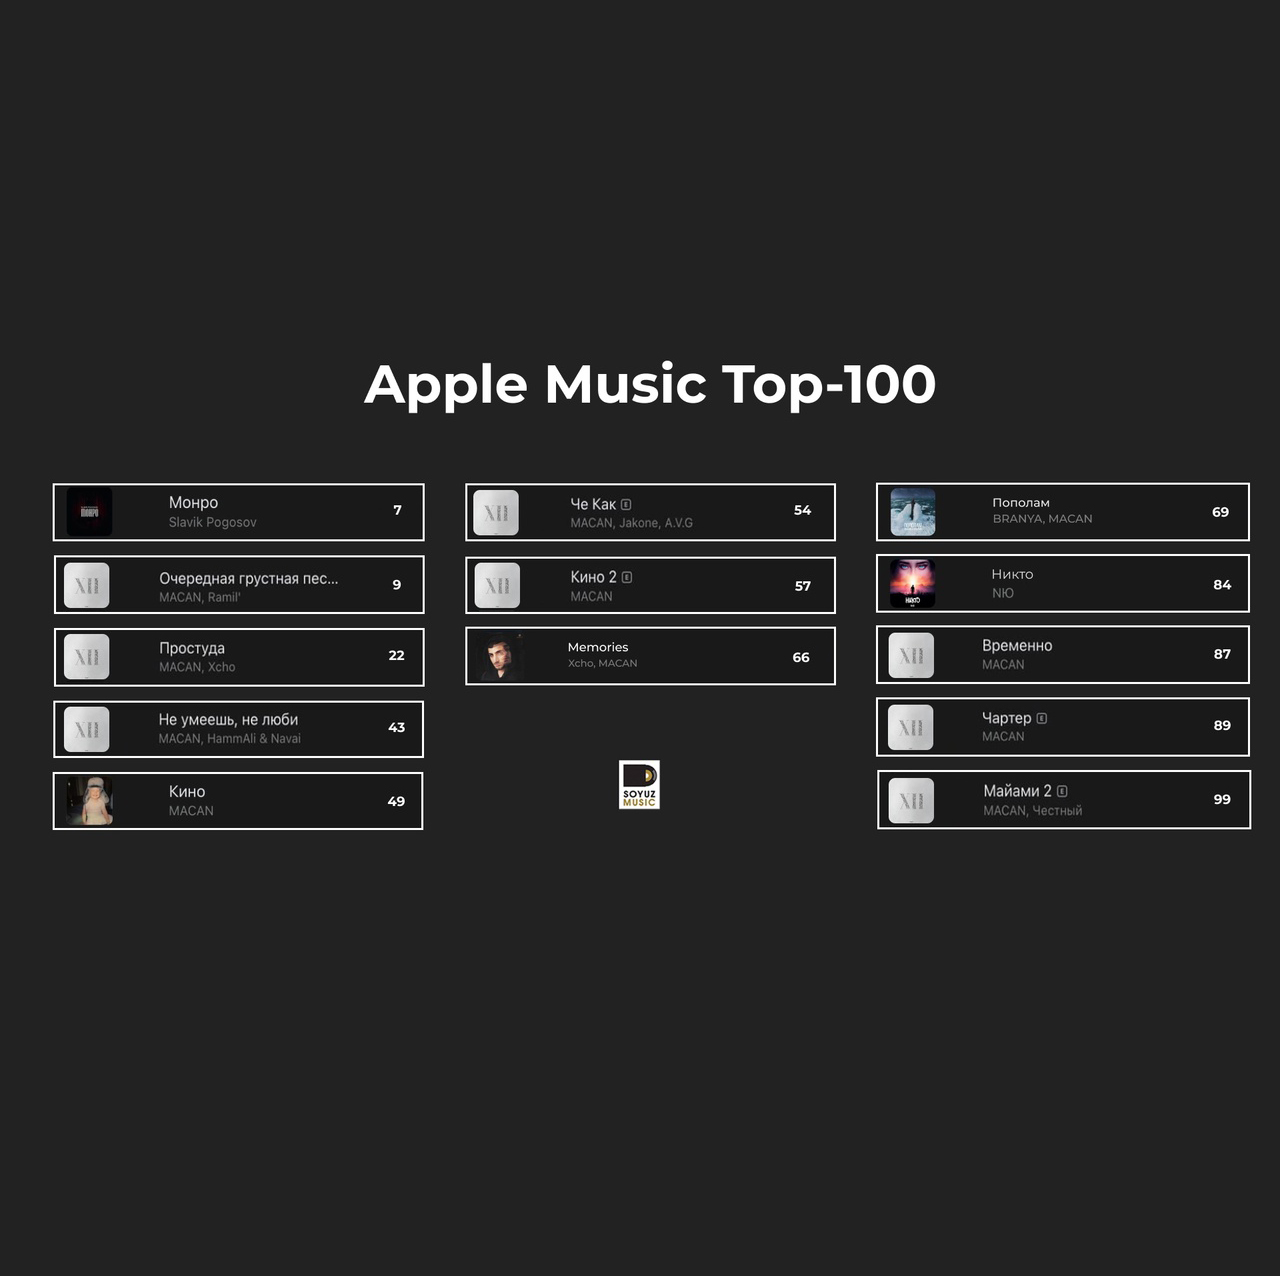 13 хитов Союз Мьюзик, сегодня в топ-100 чарт листа Apple Music.